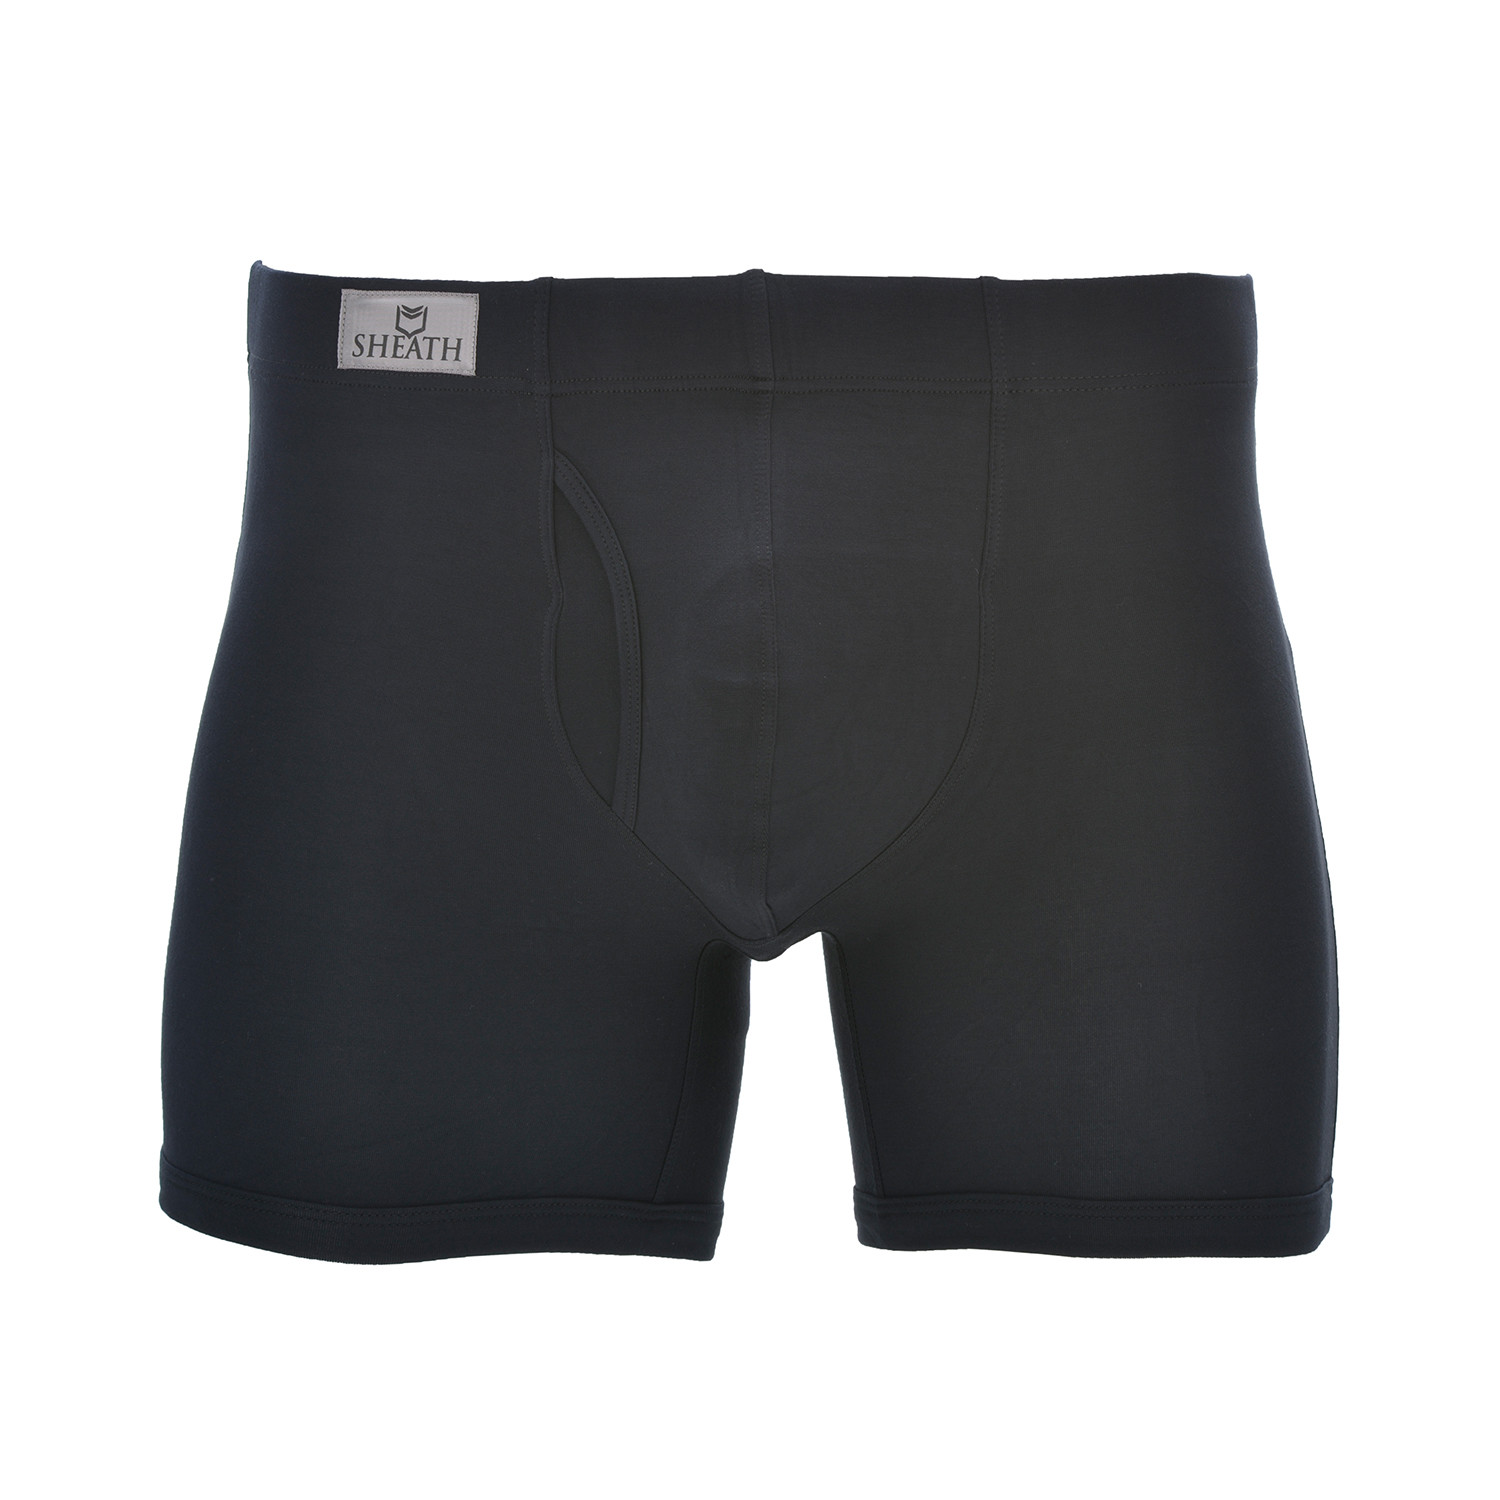 Sheath 3.21 // Dual Pouch Fly Underwear // Black (XXL) - Sheath ...